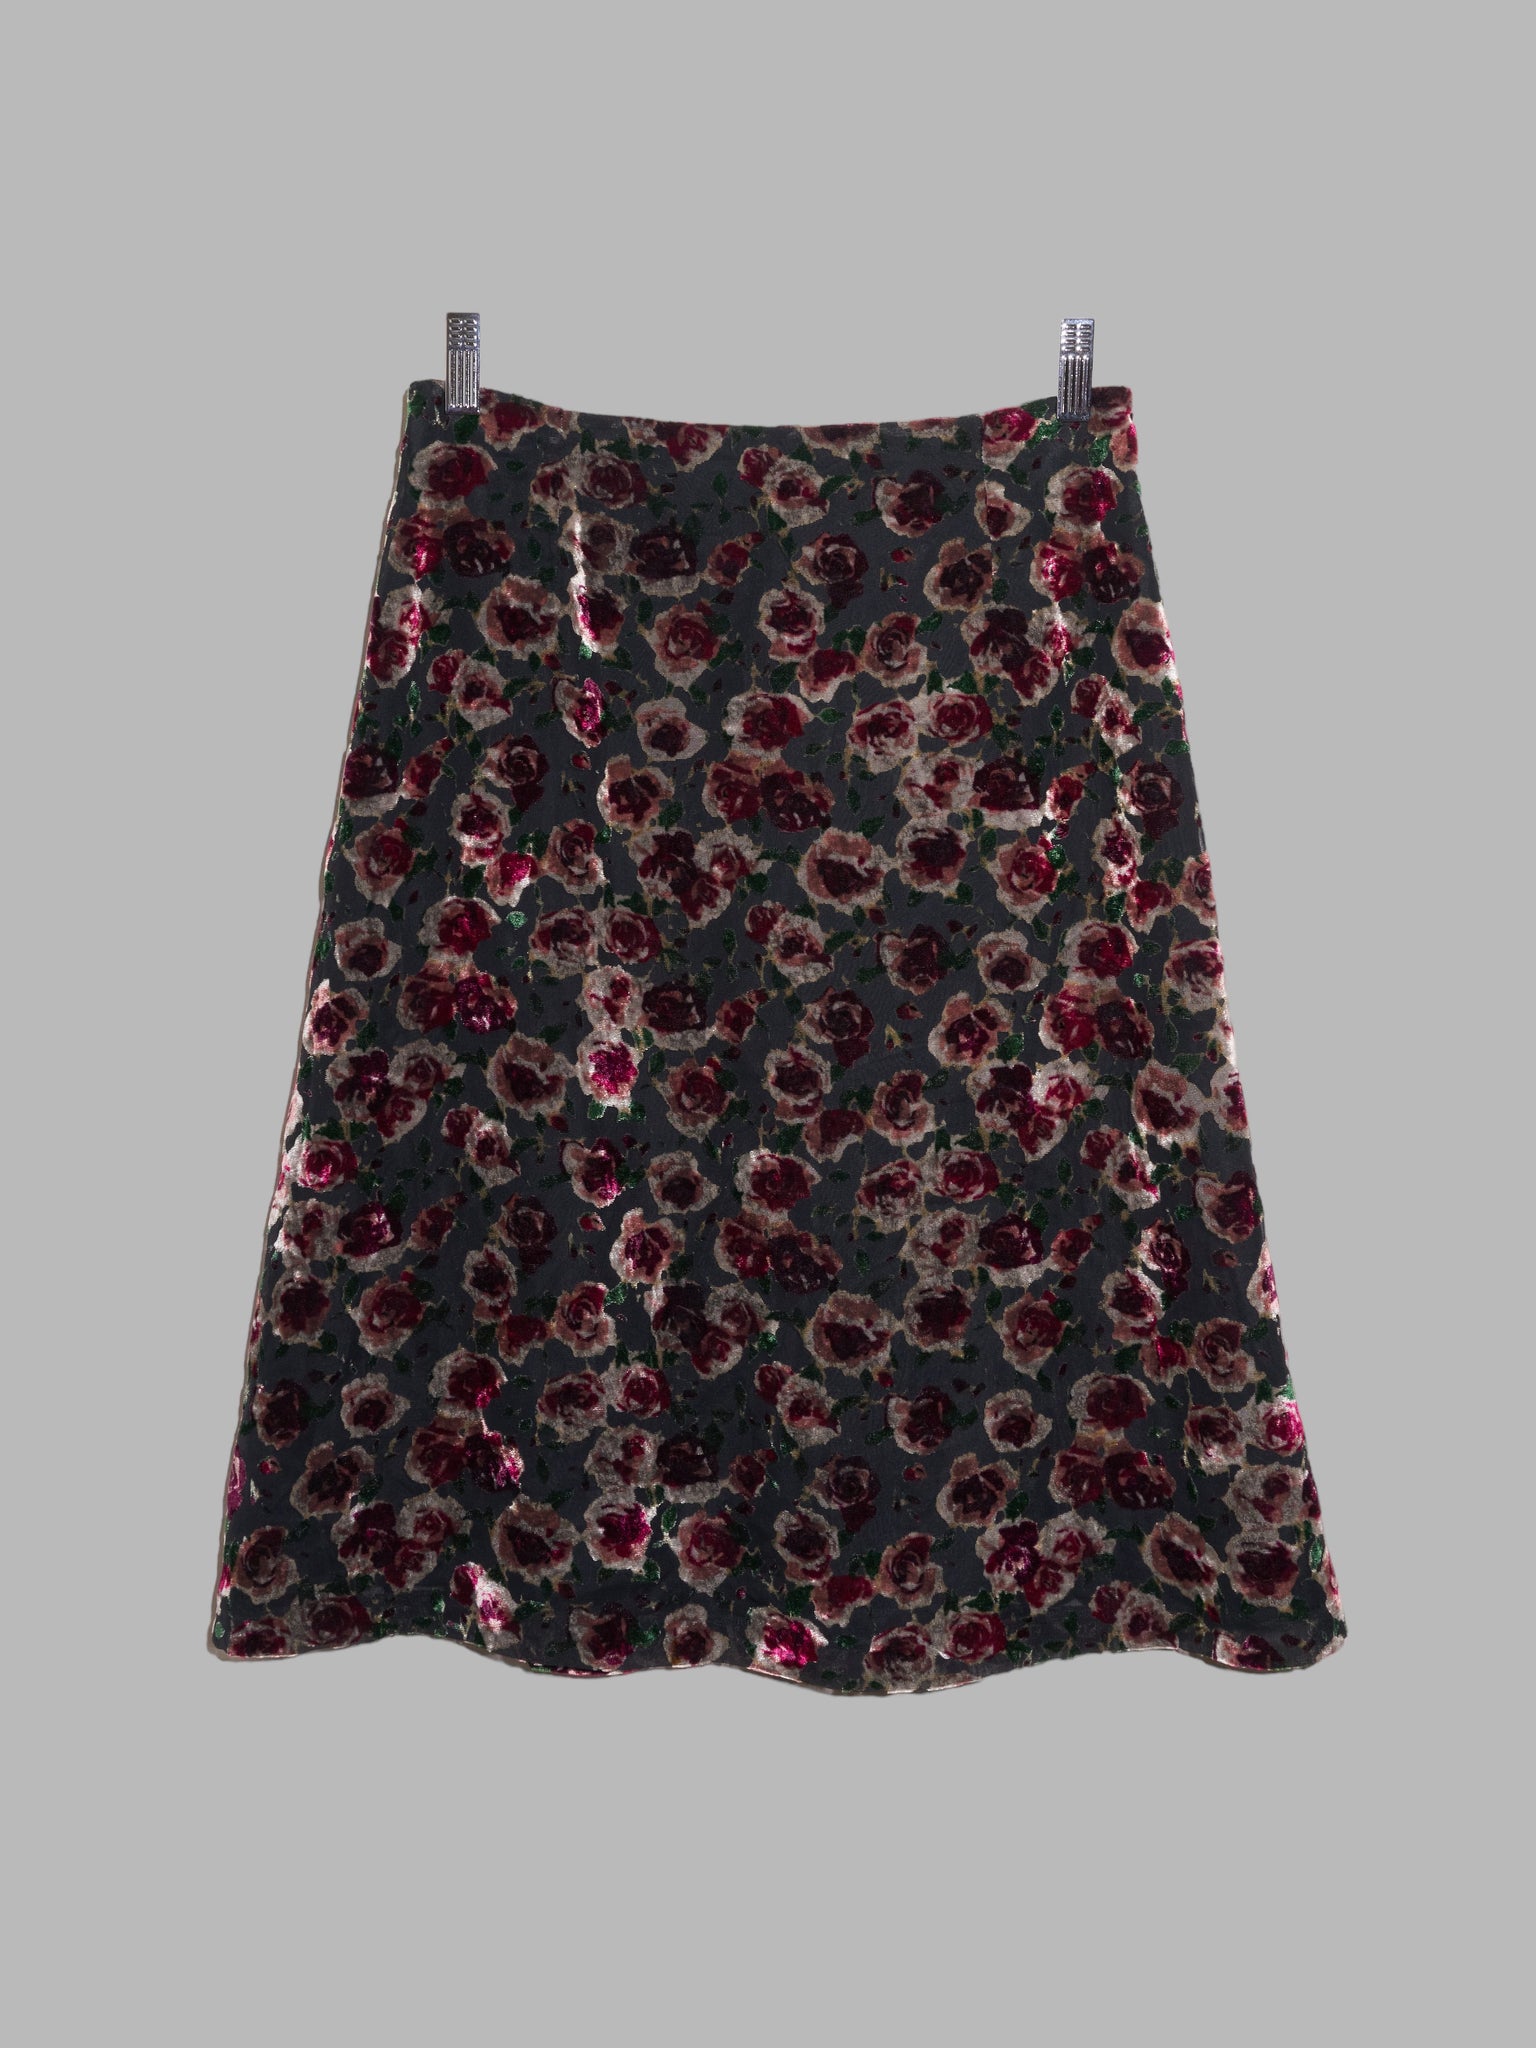 Corinne Cobson 1990s floral velvet devore burnout knee length skirt